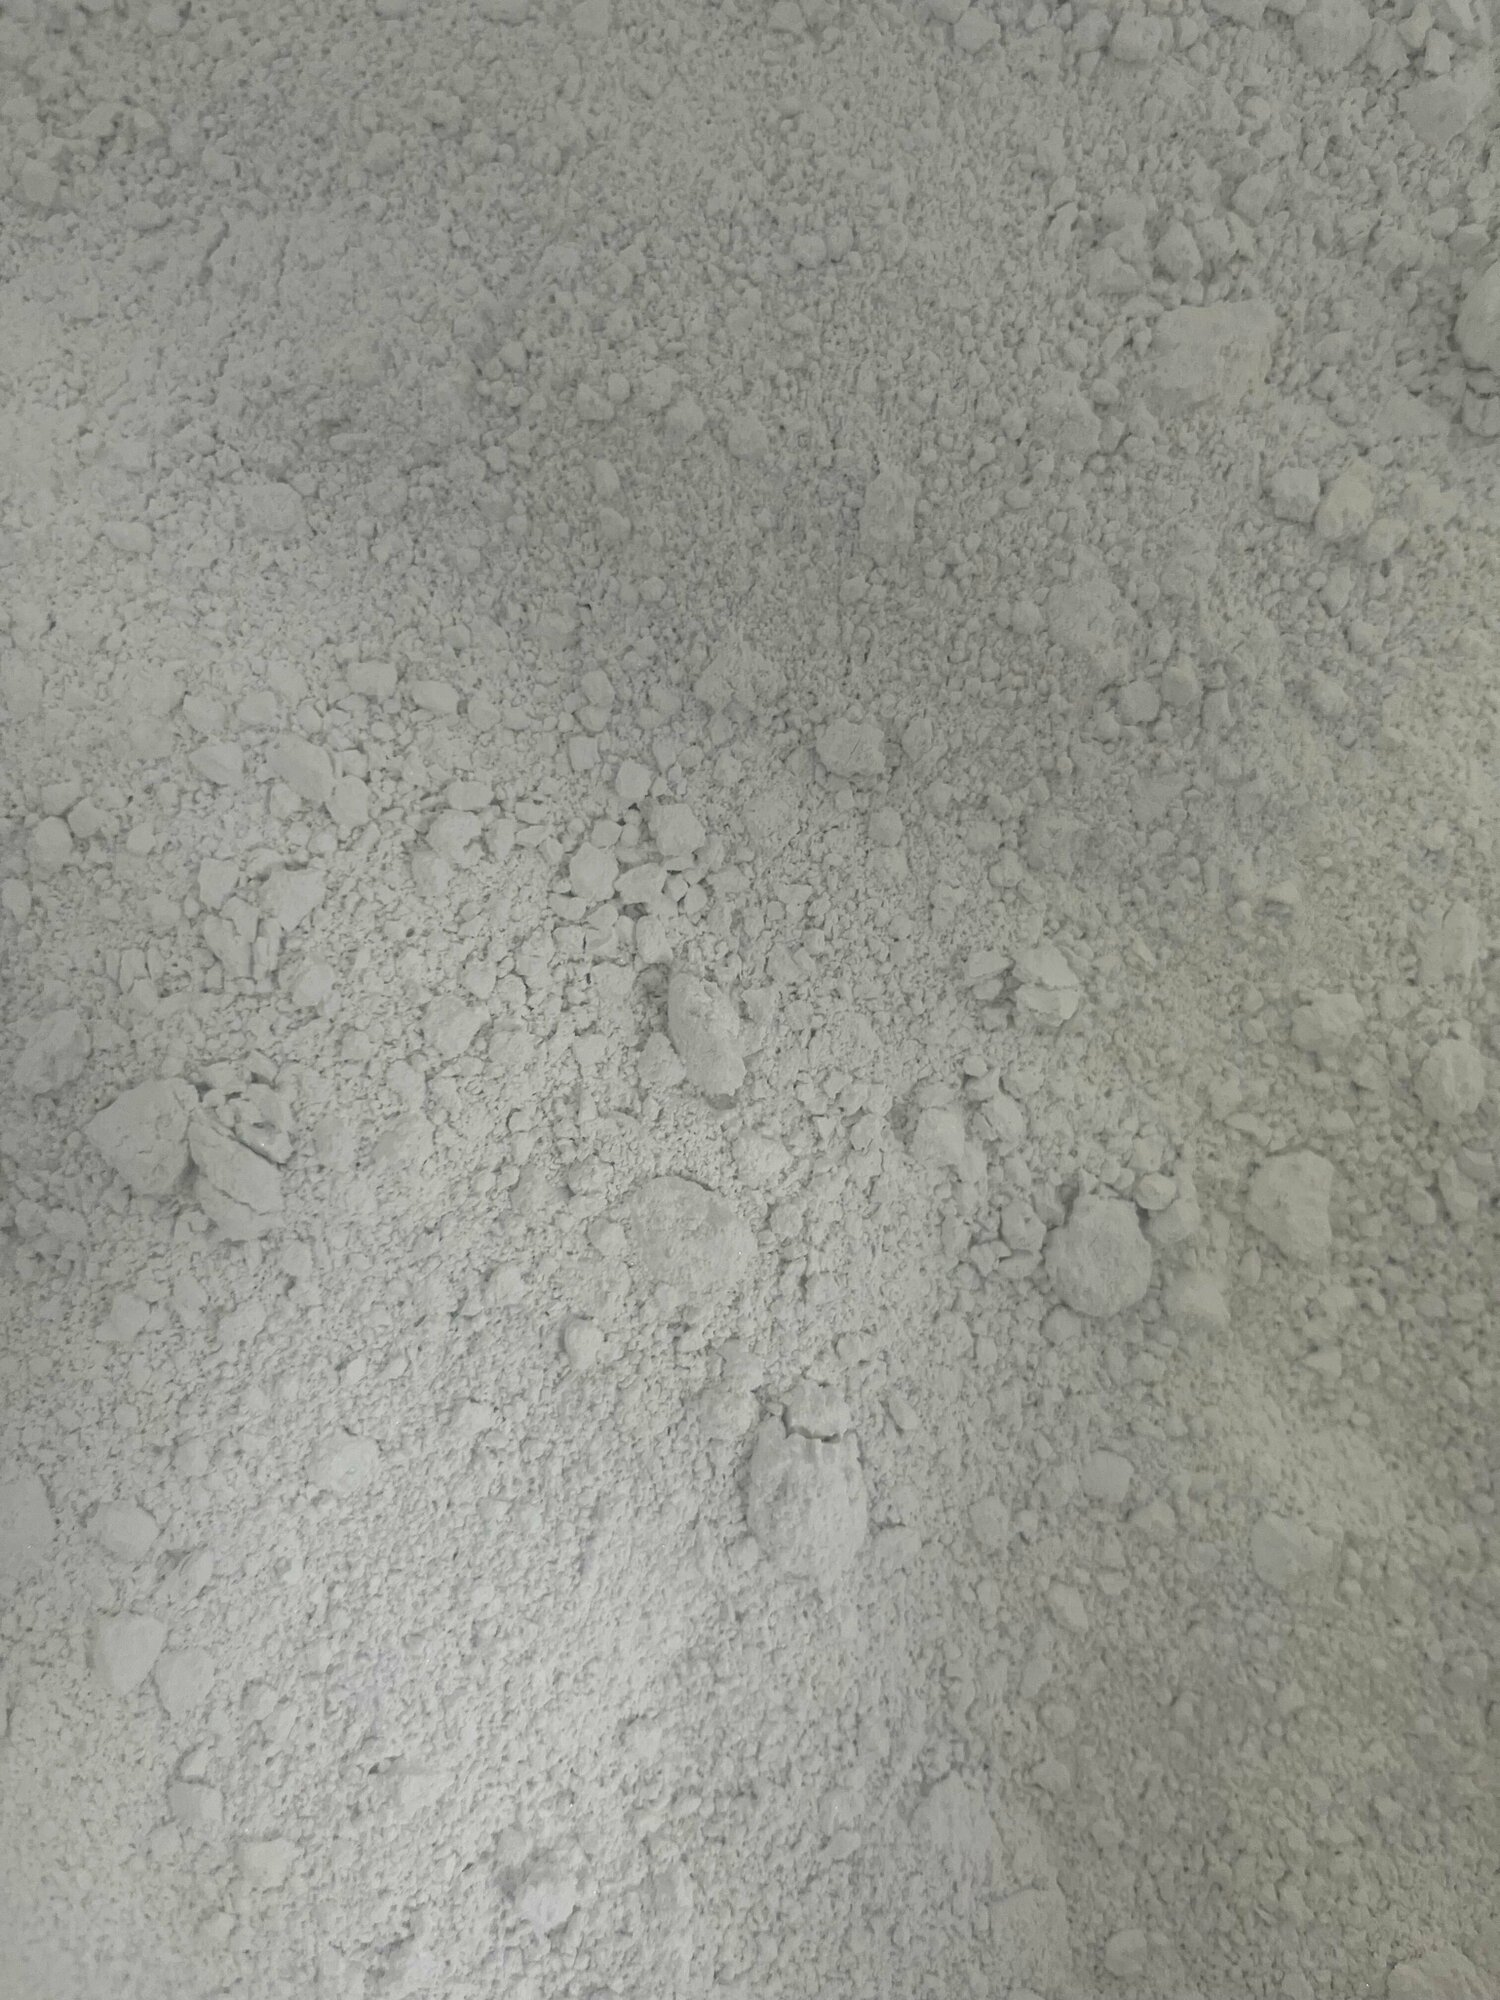 Микрокальцит, мраморная мука, белый пигмент, кальцит, 1000 гр, 2 мкр, белизна 99%